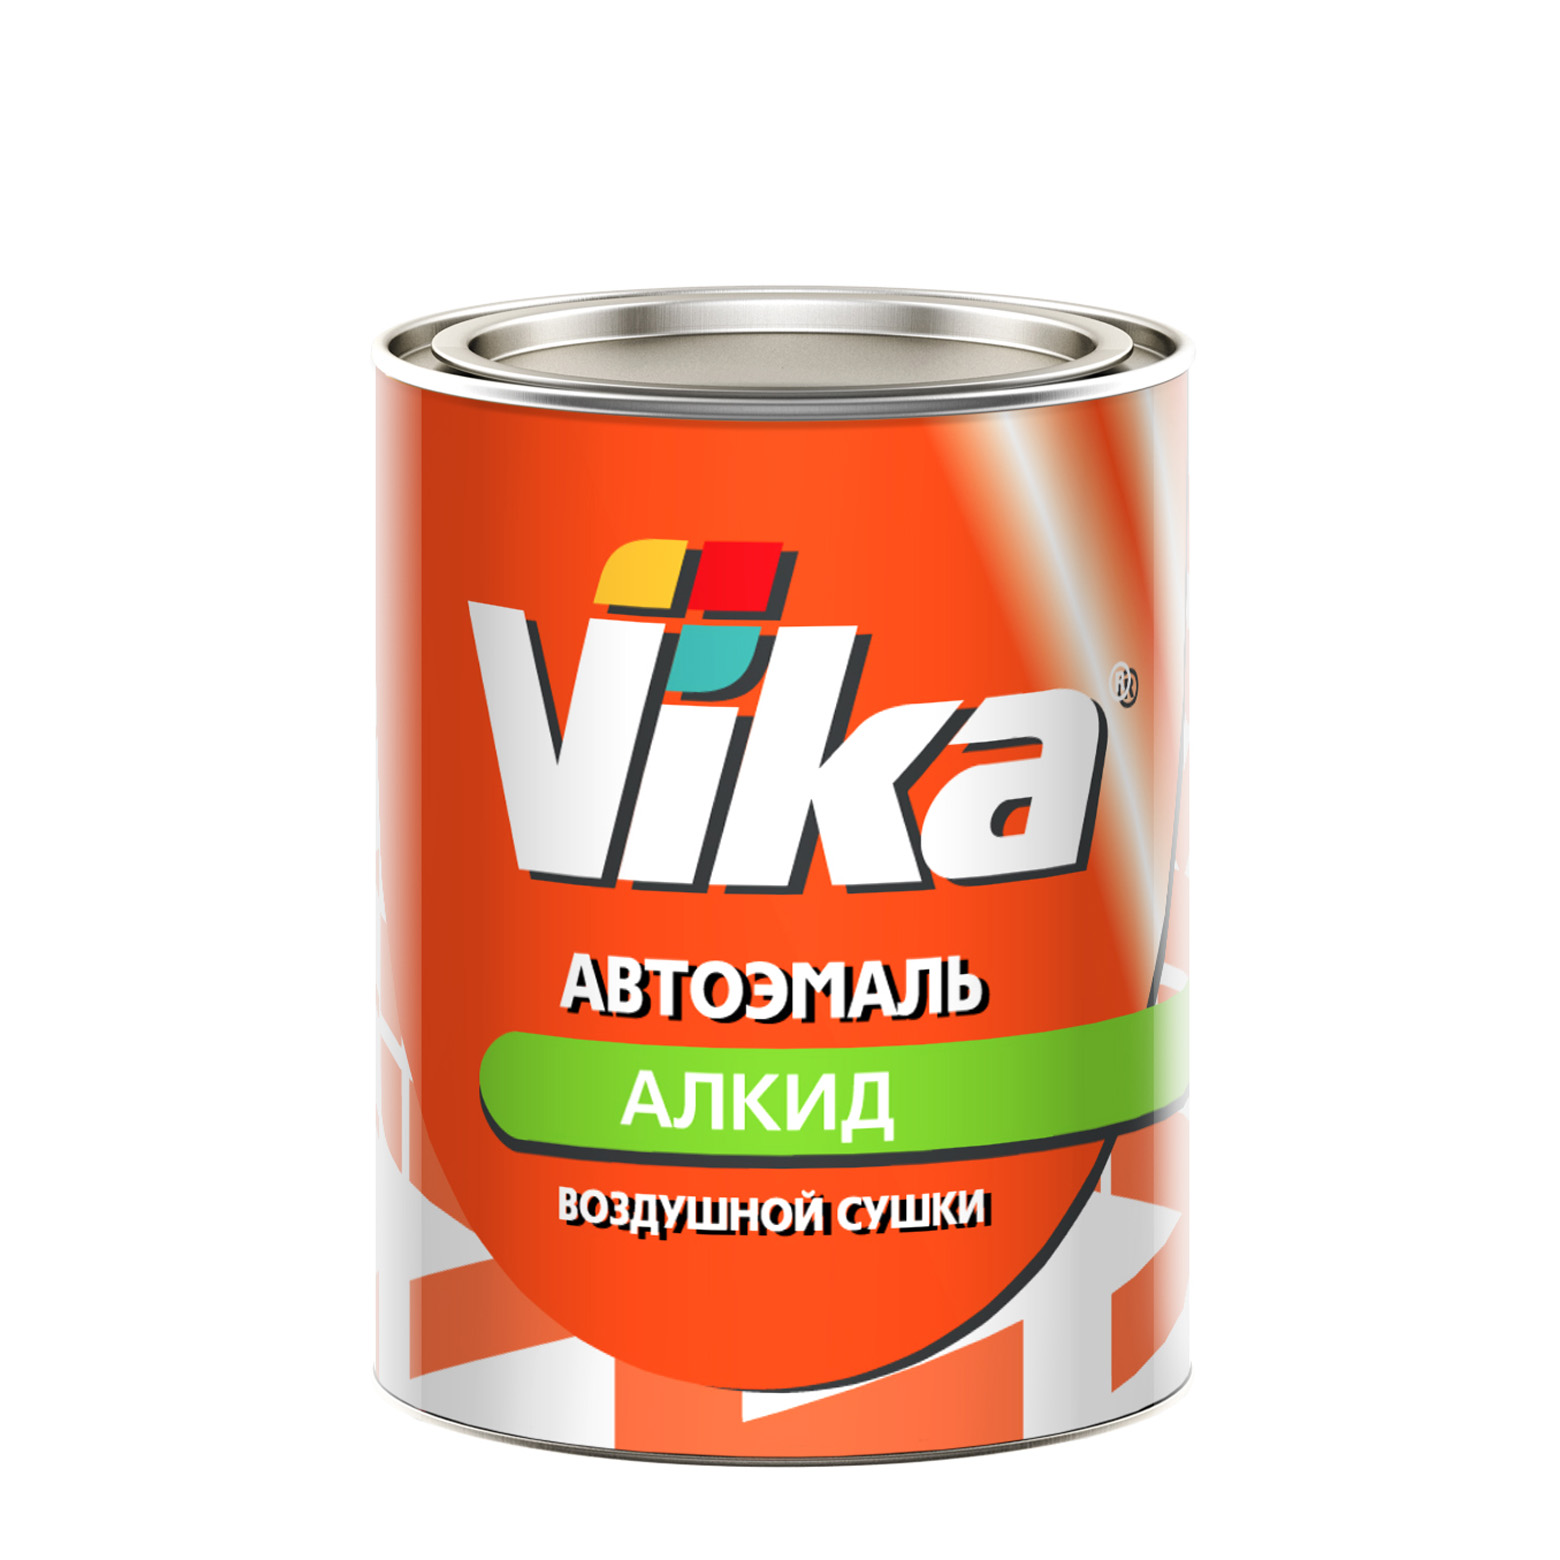 Фото 1 - Автоэмаль Vika-60, цвет Серая алкидная глянцевая естественной сушки - 0,8 кг.